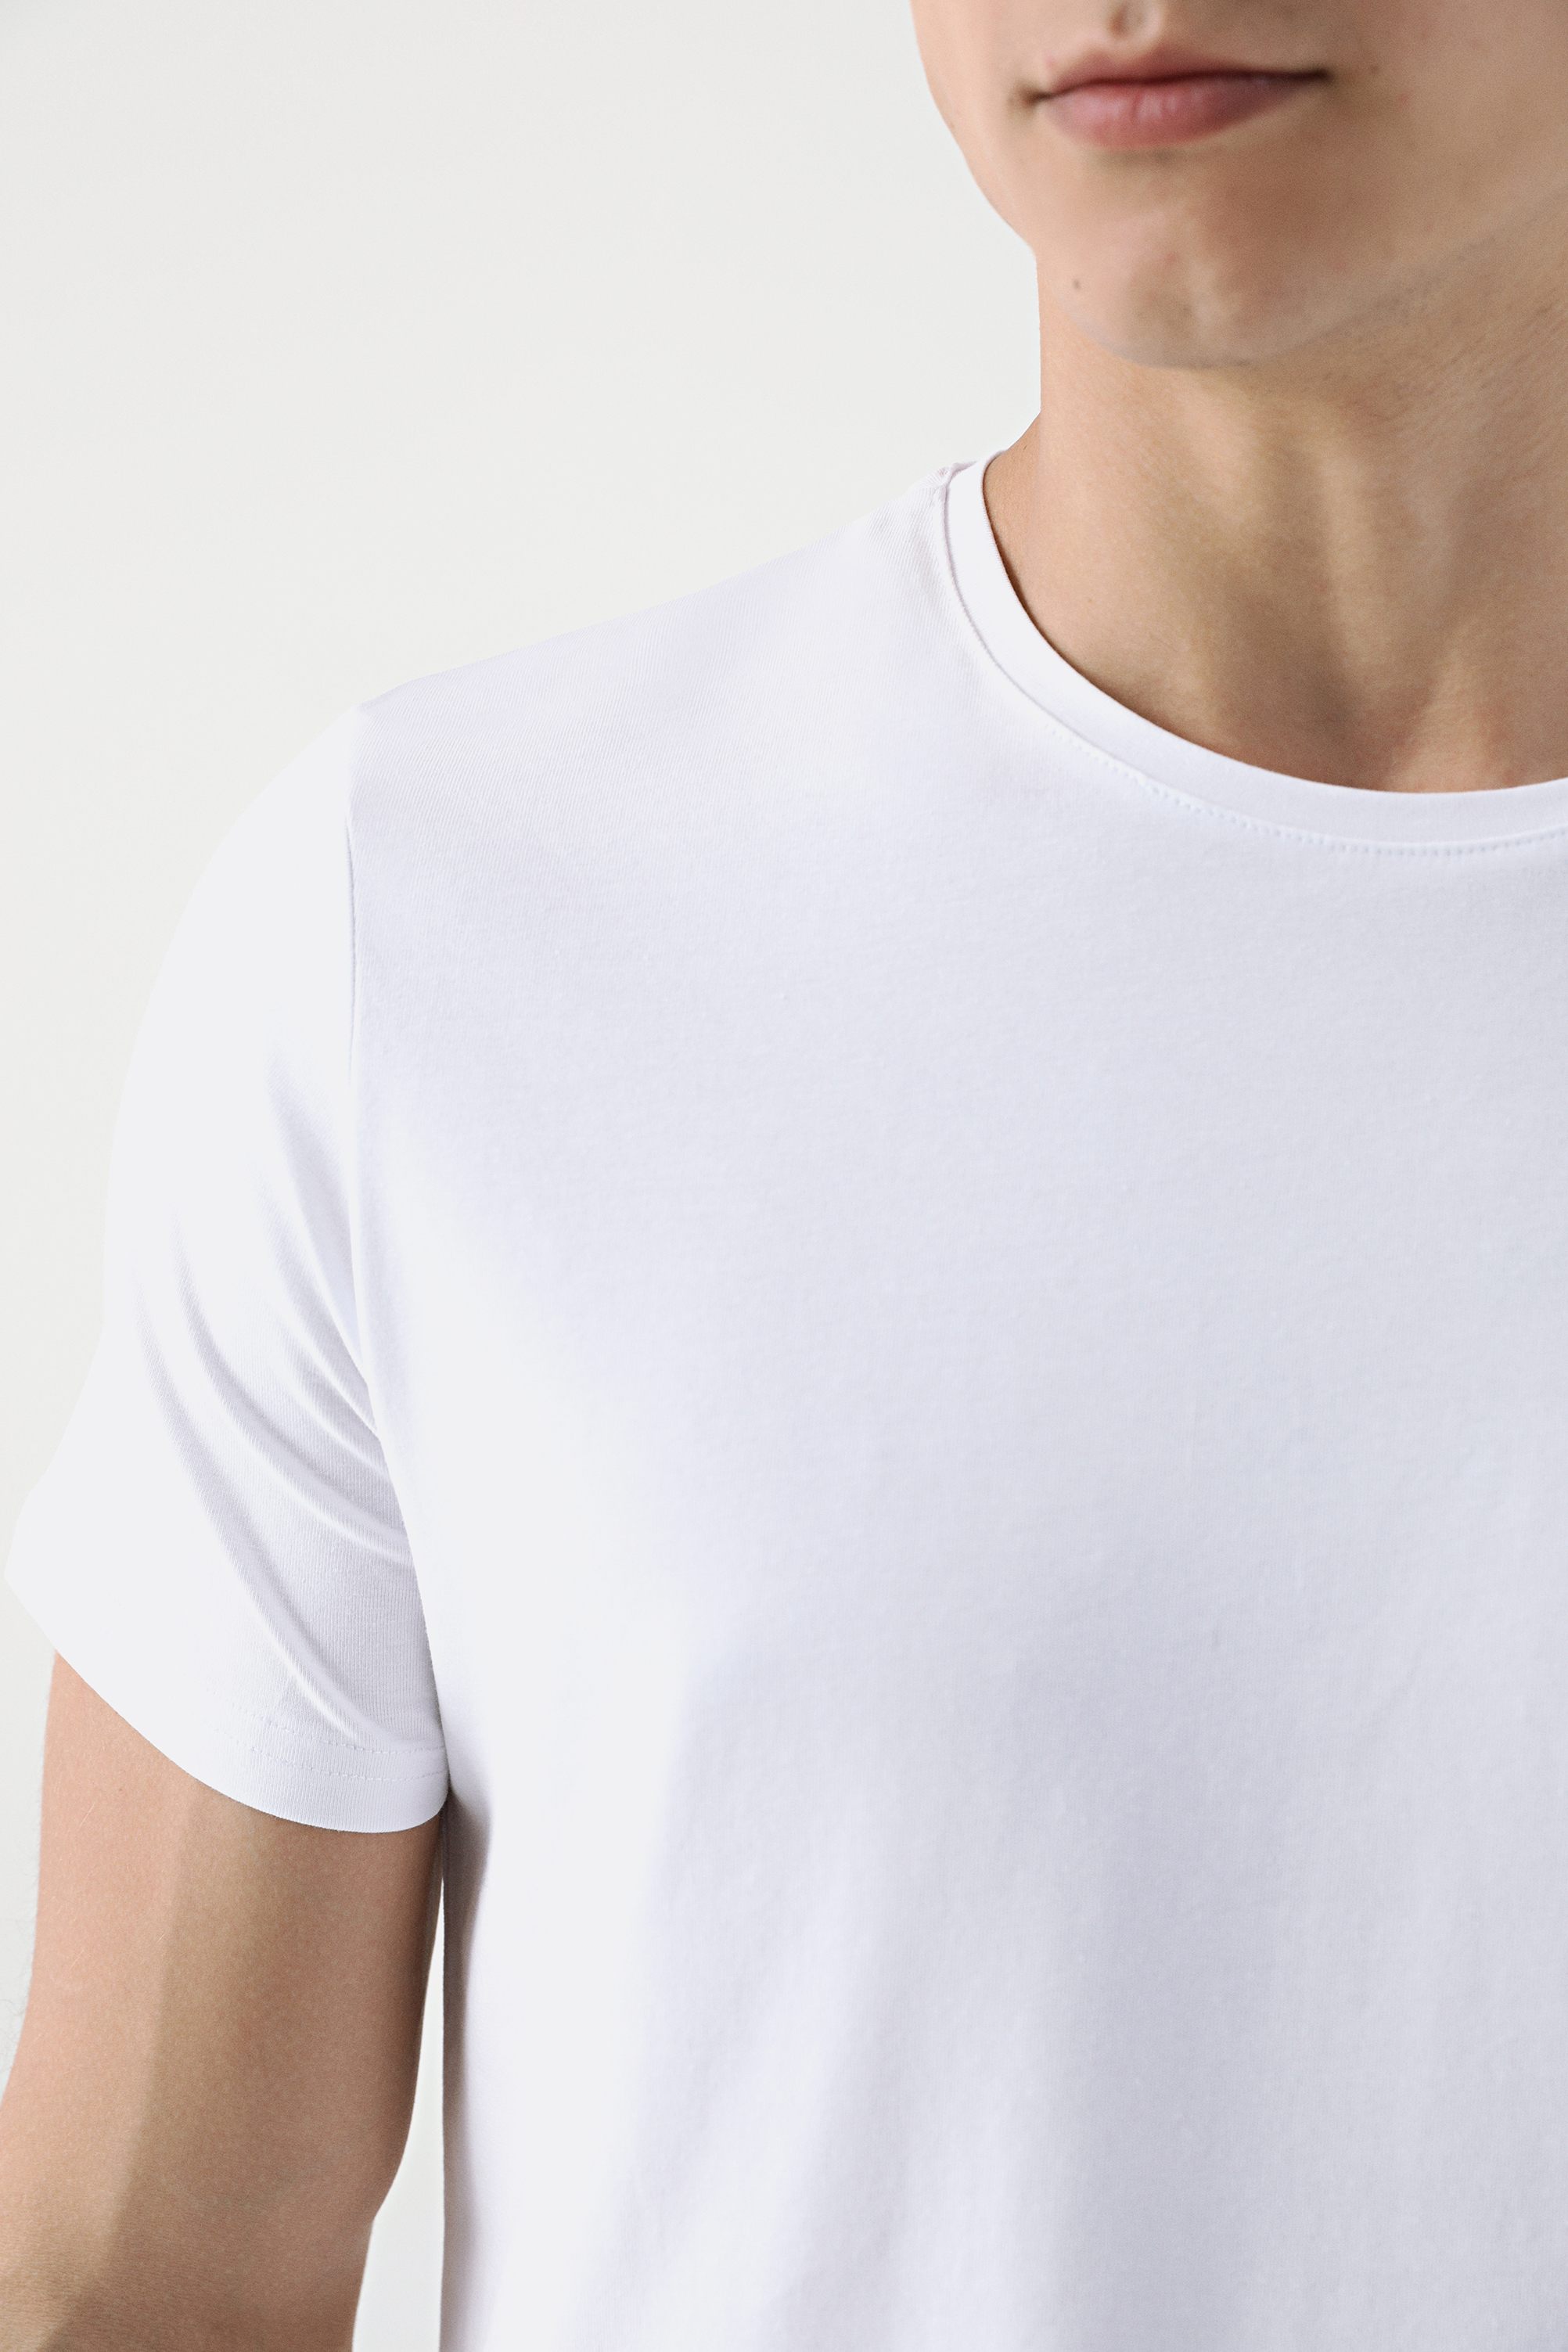 Damat Tween Tween Beyaz T-shirt. 2